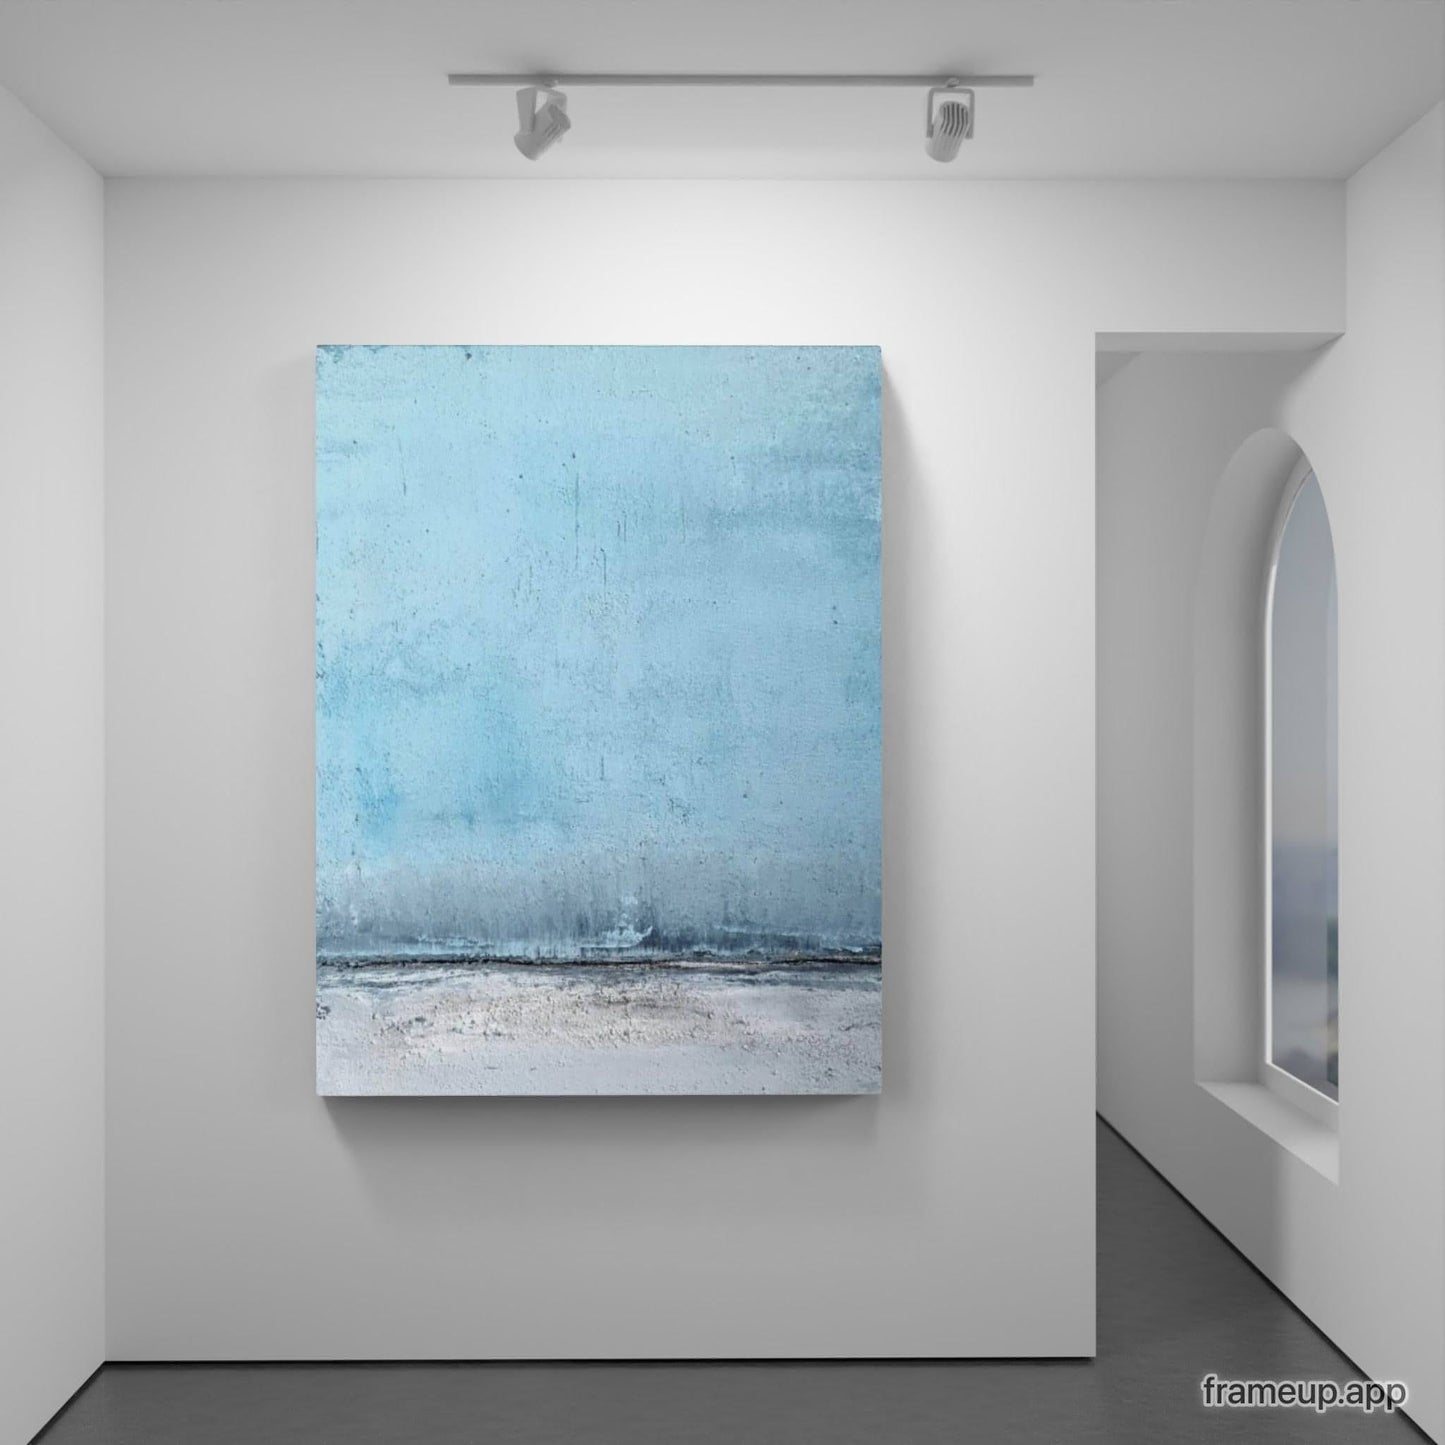 Abstraktes blaues Bild in verschiedenen Blautönen, inspiriert von einer Landschaft Abstrakte Bilder & moderne Auftragsmalerei, abstrakte große bilder online kaufen, Auftrags Malere